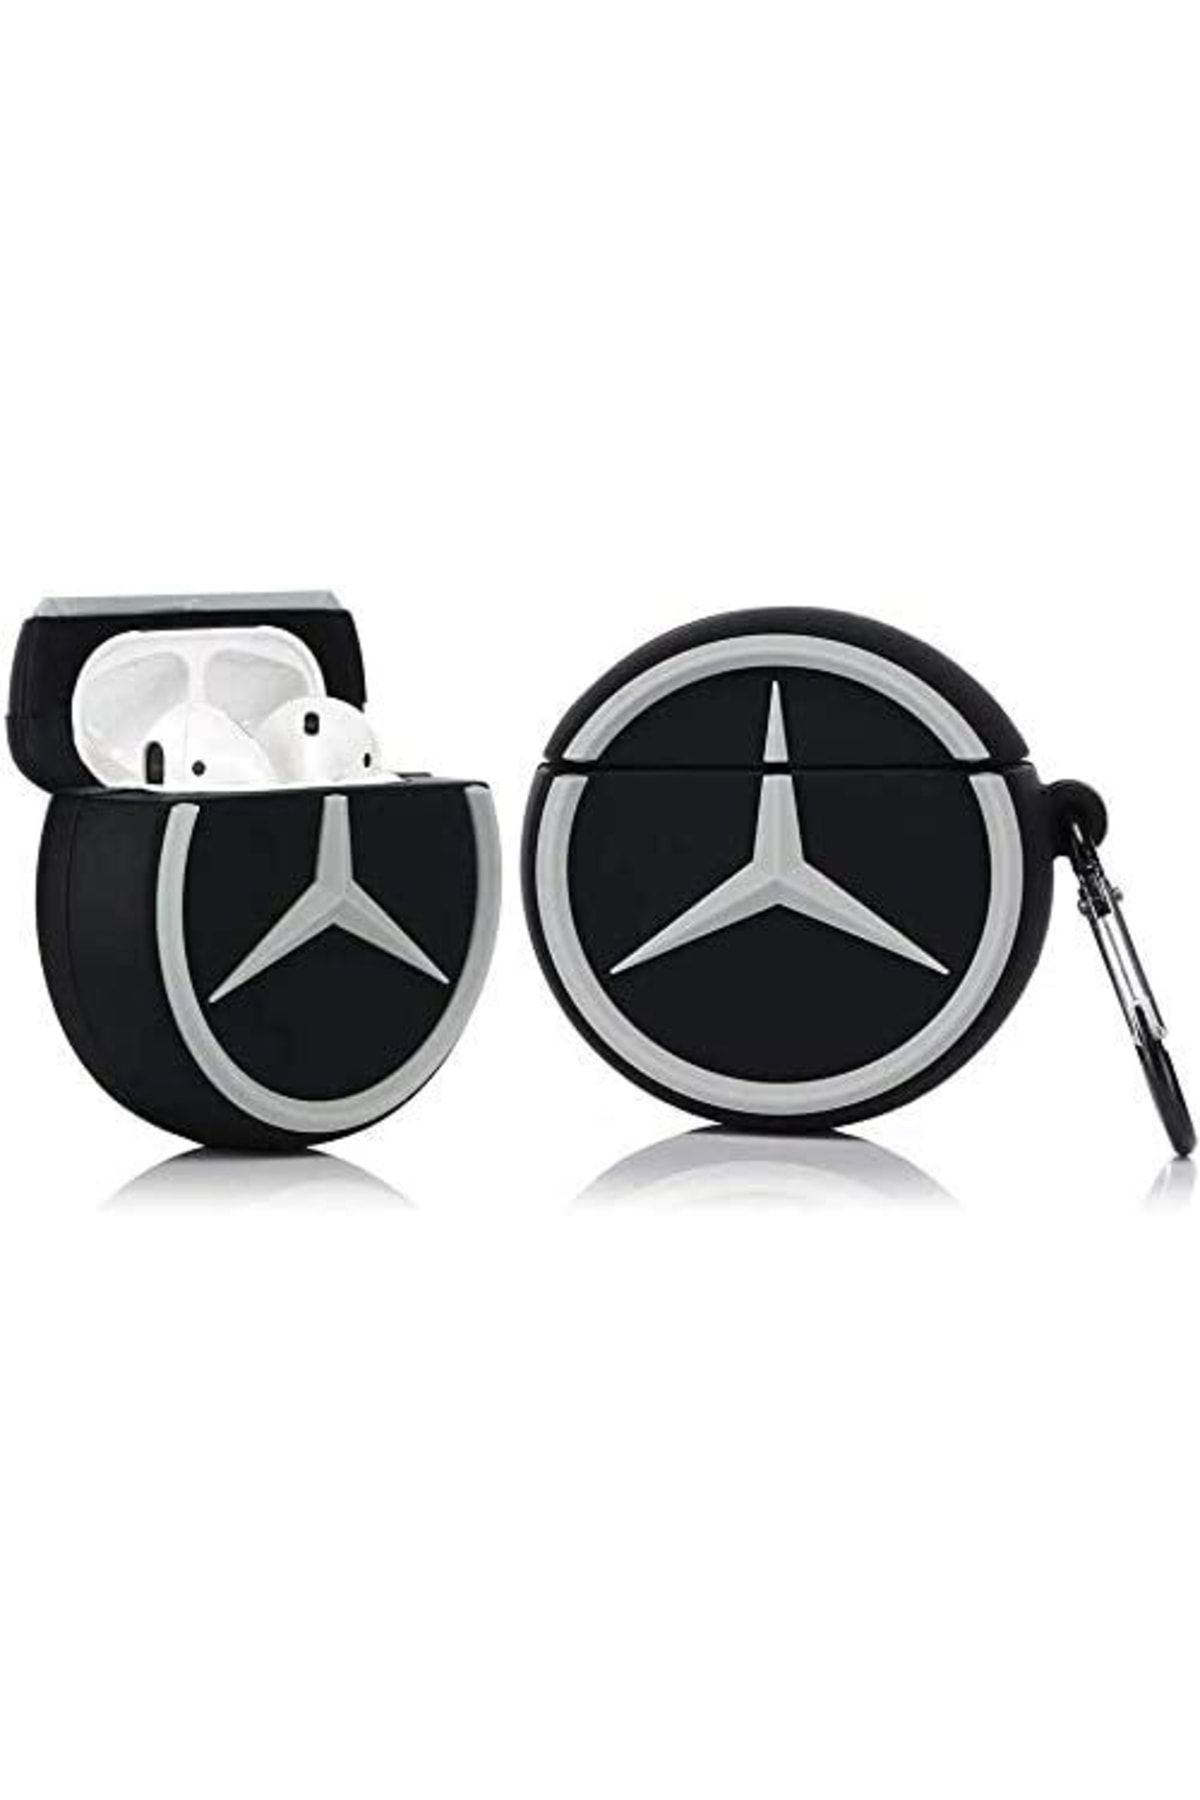 white case 1. Ve 2. Nesil  Premium Mercedess Logo Silikon Koruma Kılıf